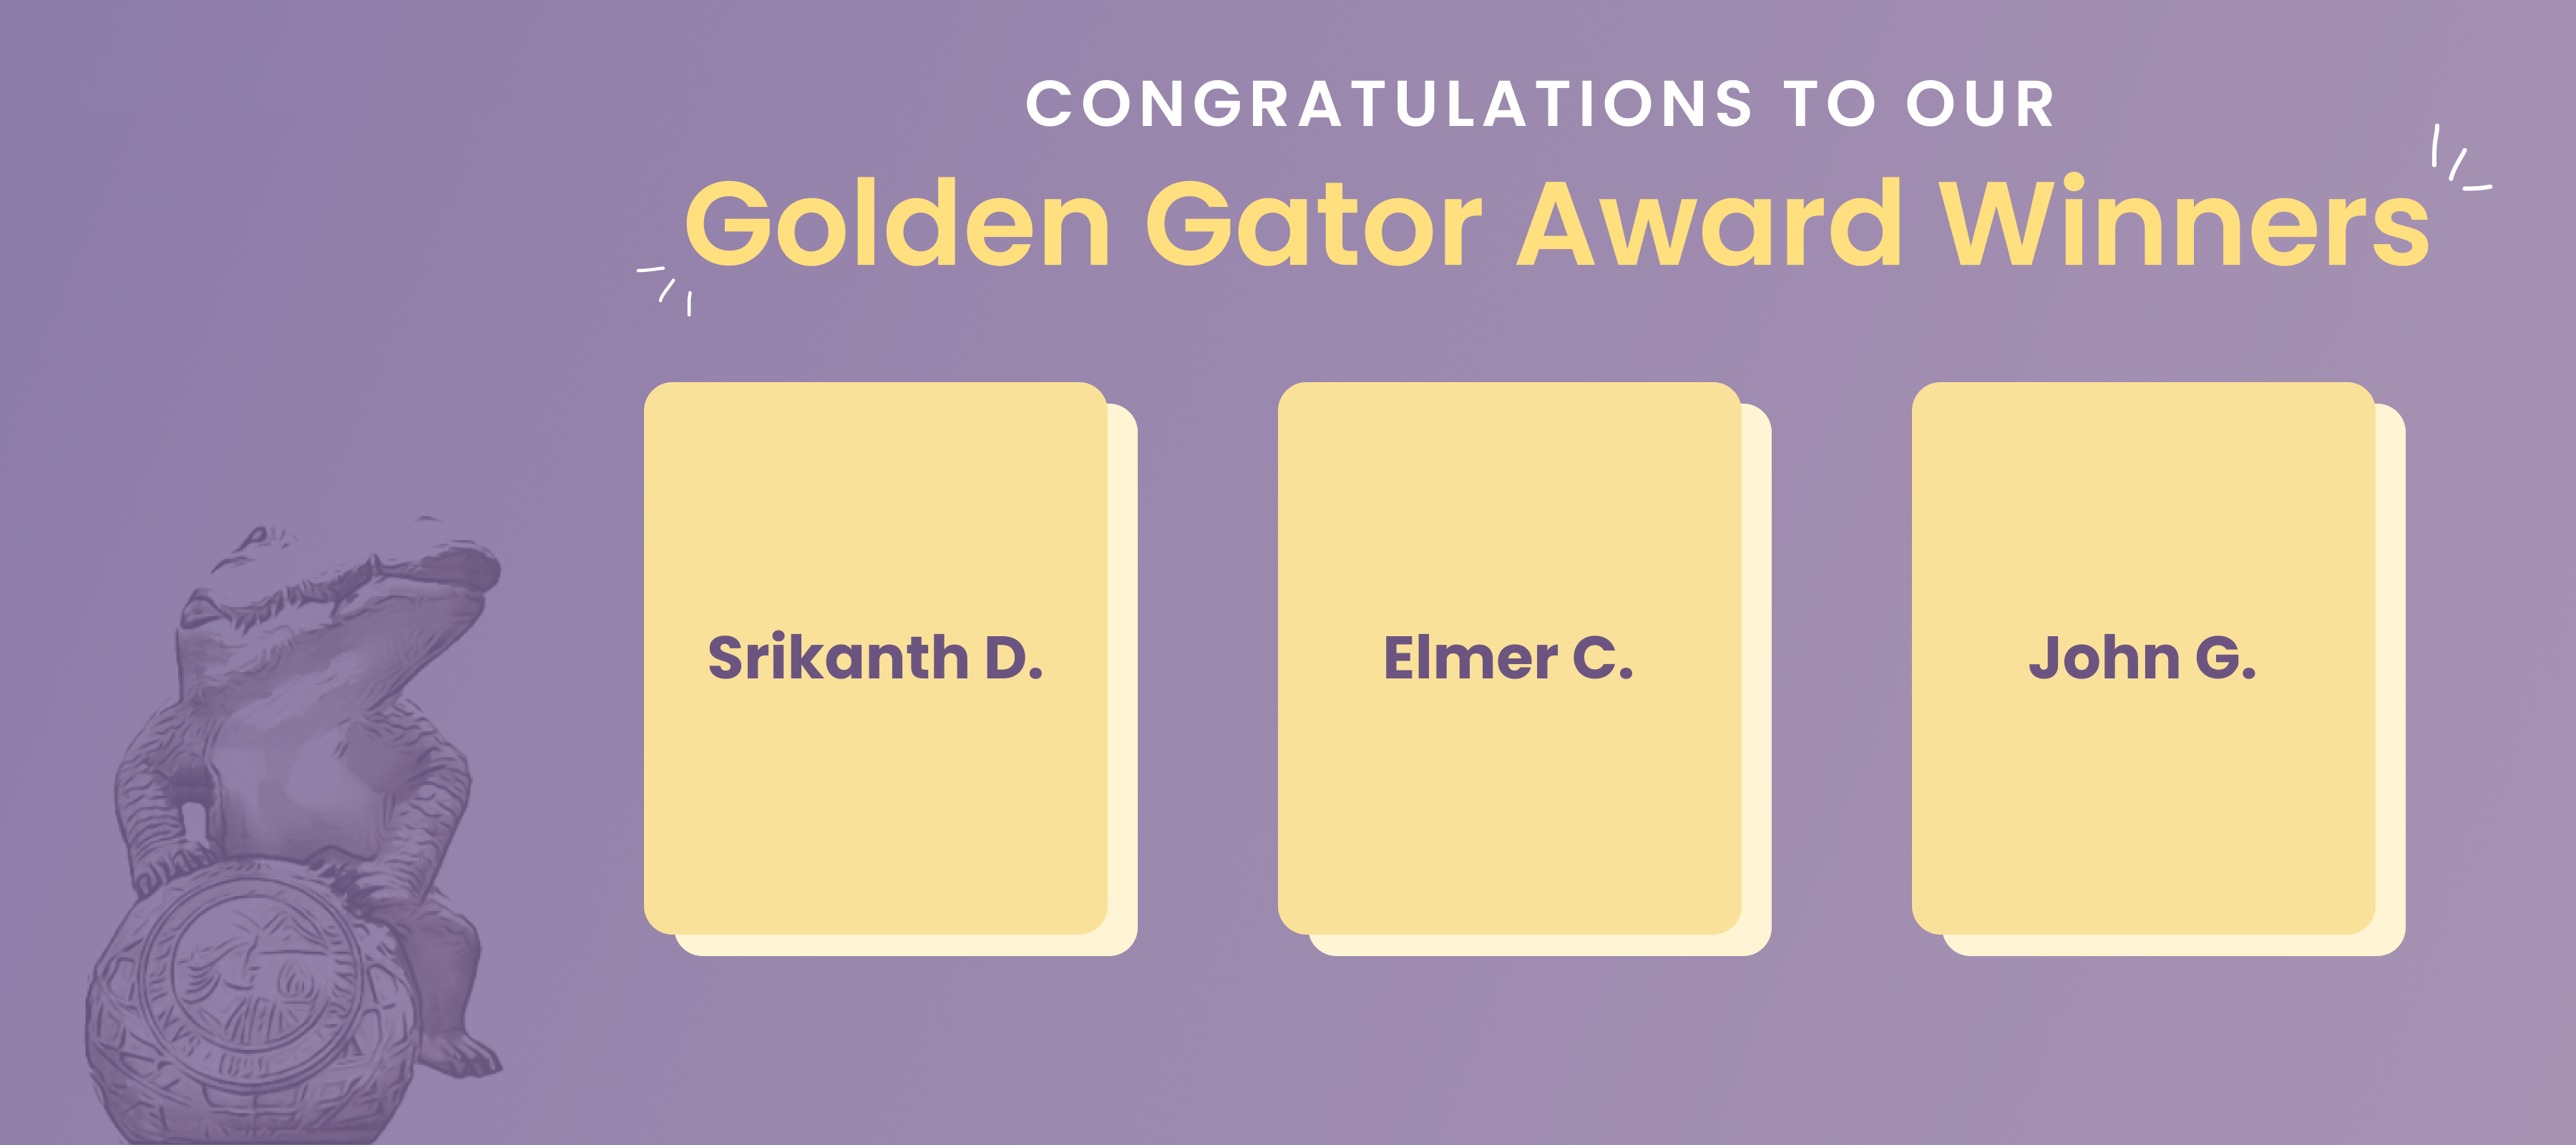 Congratulations to our Q1 2023 Golden Gator Award Winners: Srikanth D., Elmer C., and John G. 